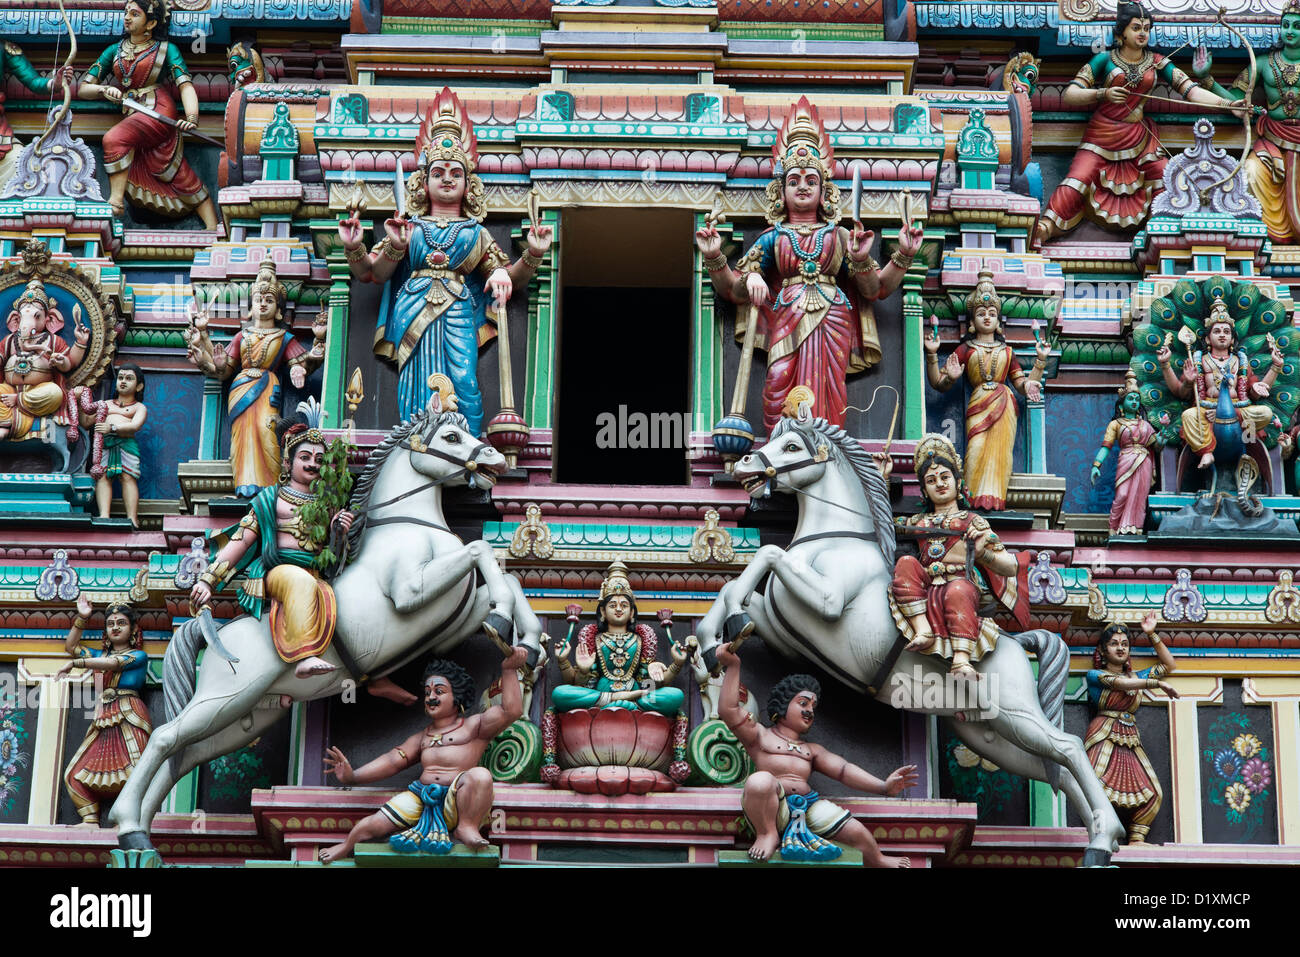 Colorate figurine scolpiti ornano il gopuram principale del Sri Mahamariamman tempio indiano di Kuala Lumpur in Malesia Foto Stock